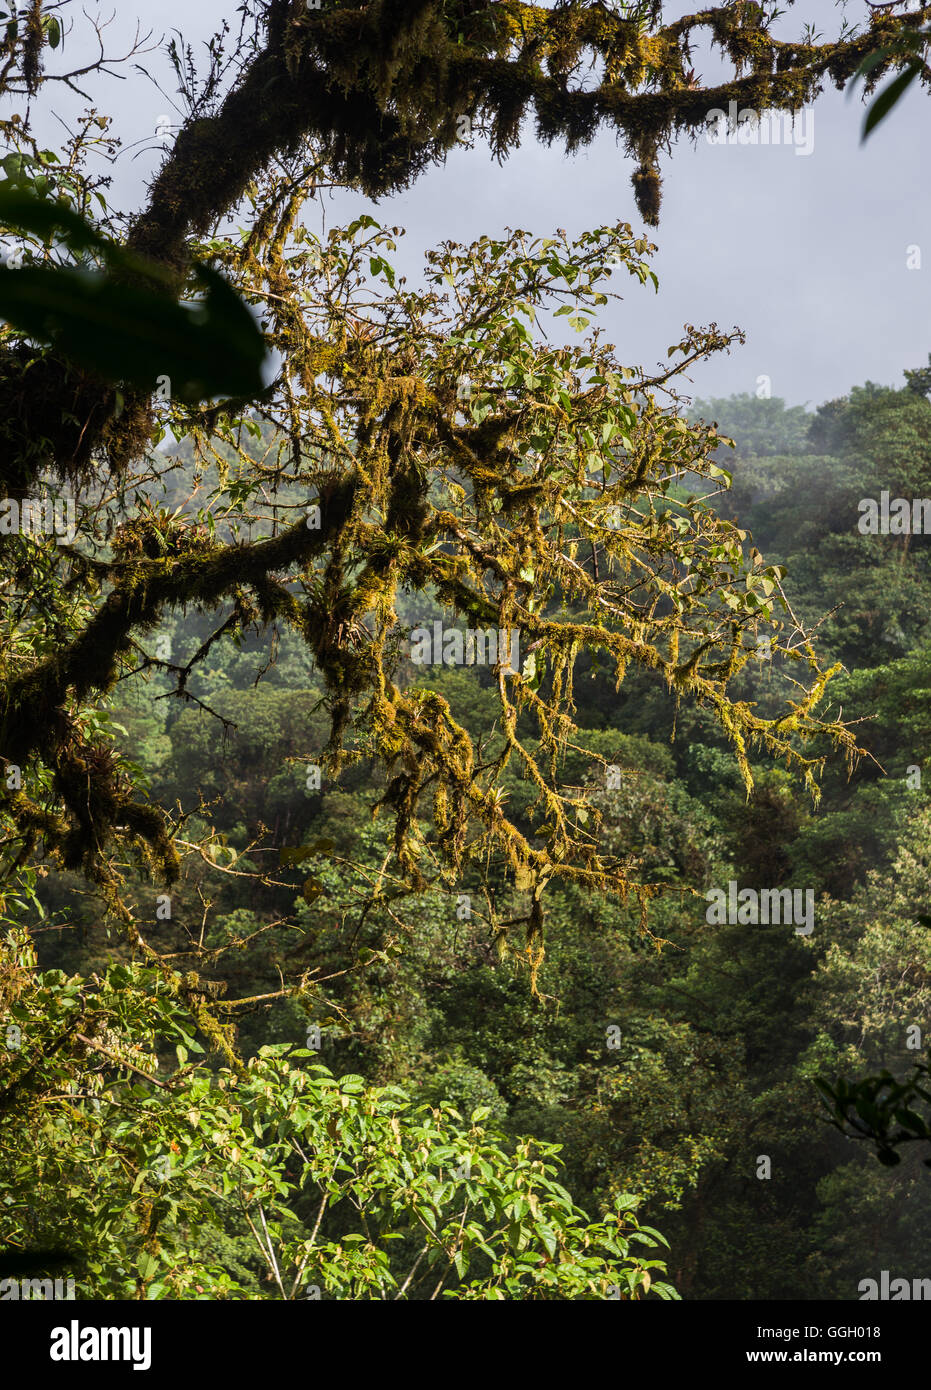 Les arbres sont couverts d'épiphytes dans la forêt de nuages tropicaux des montagnes des Andes. L'Équateur, en Amérique du Sud. Banque D'Images